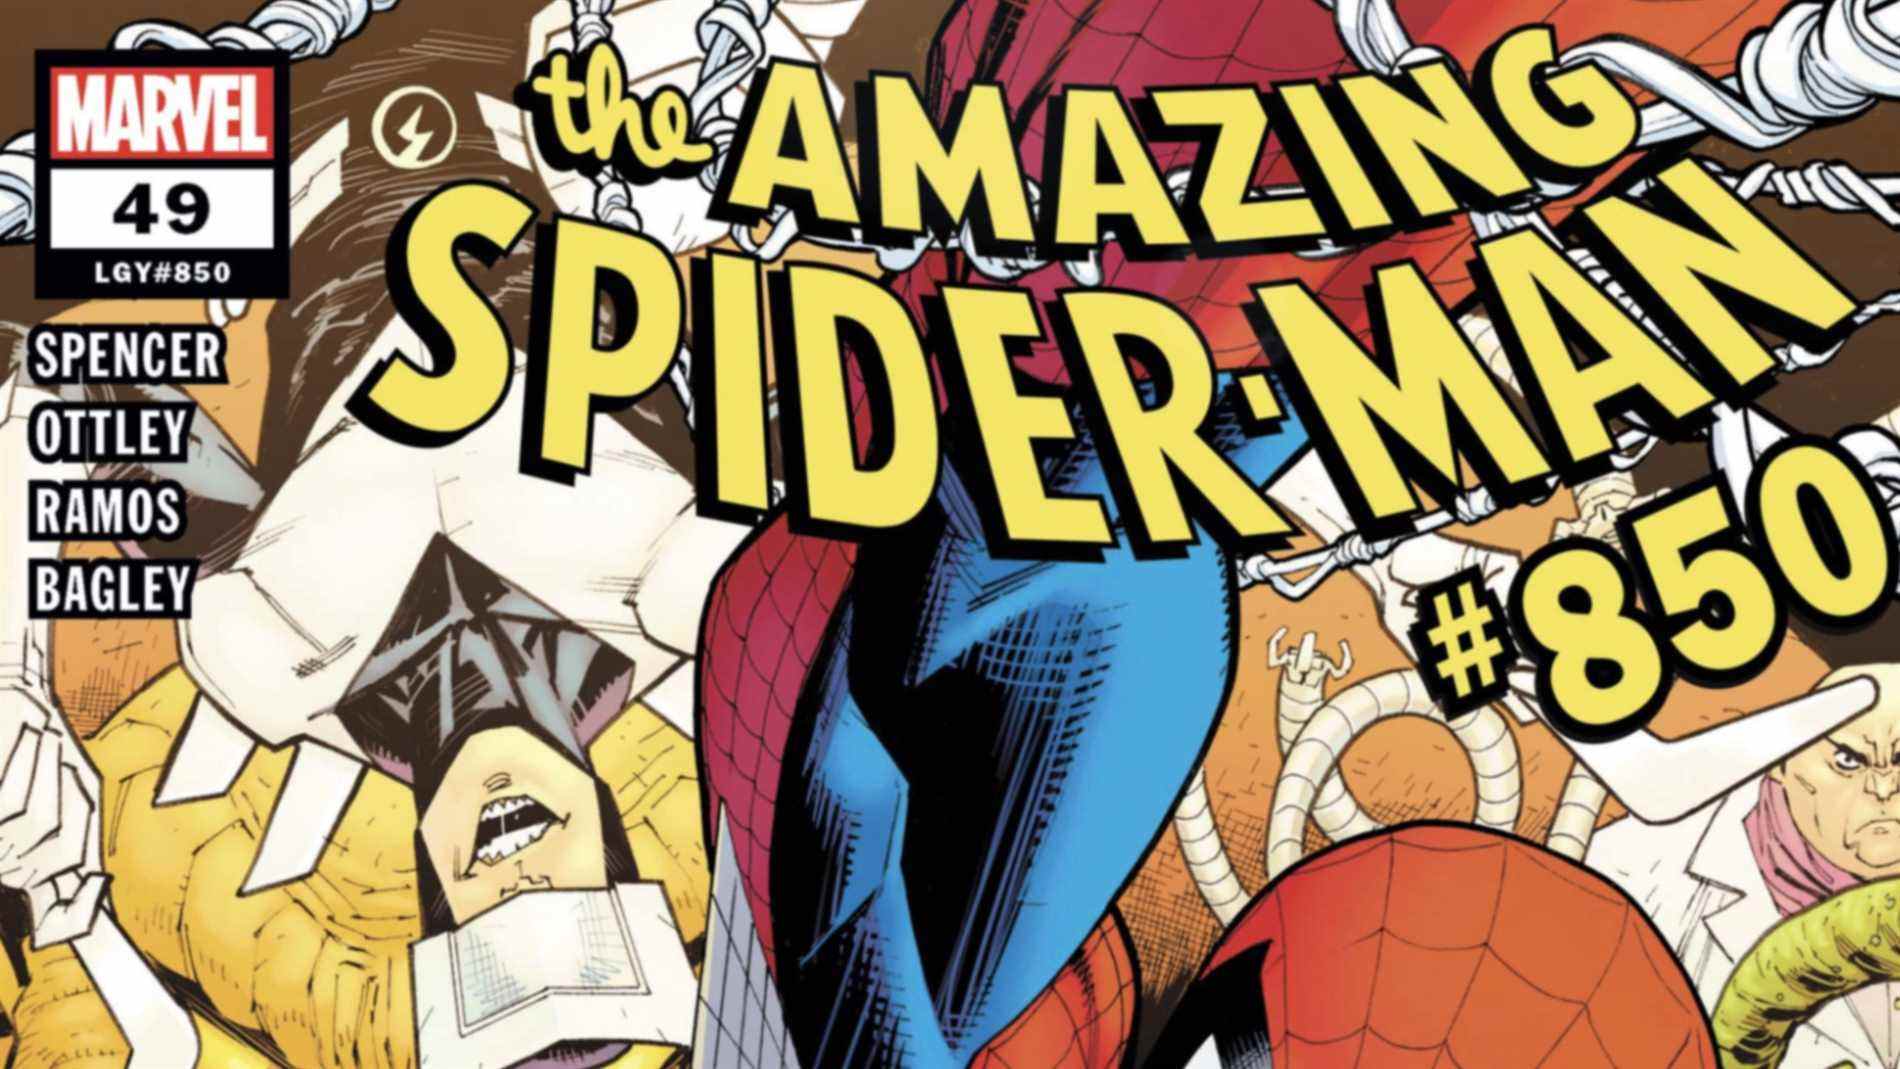 Extrait de couverture de l'incroyable Spider-Man # 850